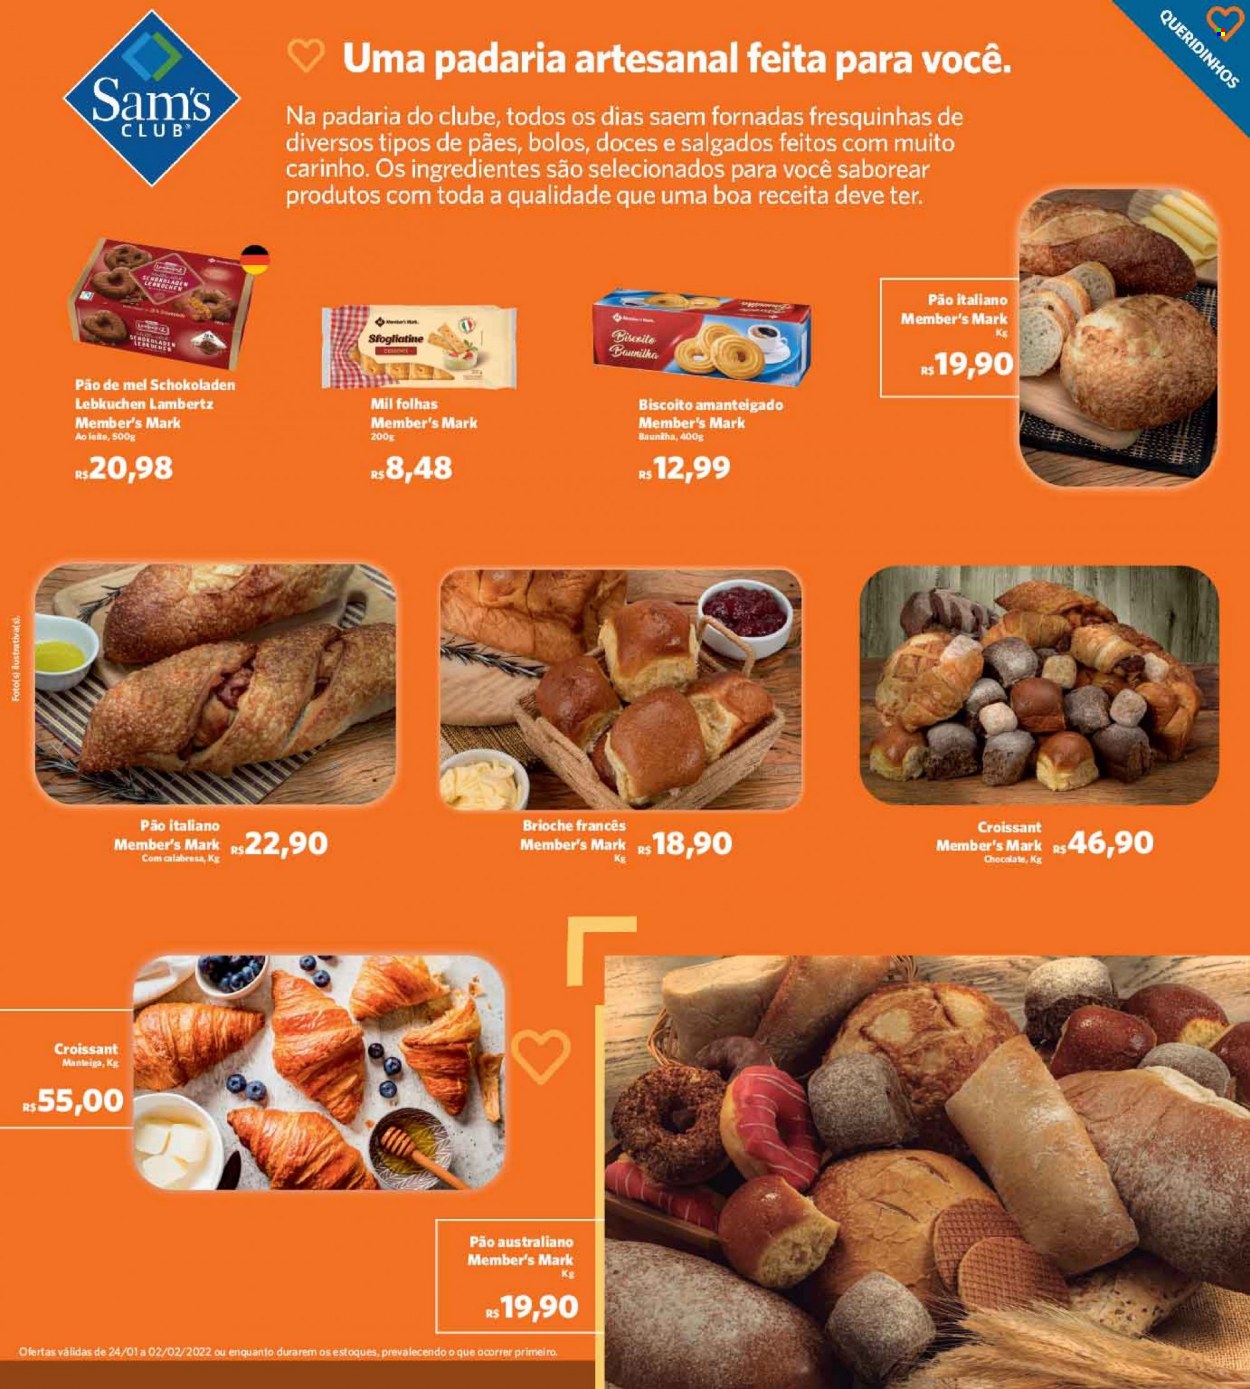 thumbnail - Folheto Sam's Club - 24/01/2022 - 02/02/2022 - Produtos em promoção - pão, brioche, croissant, manteiga, biscoito. Página 8.